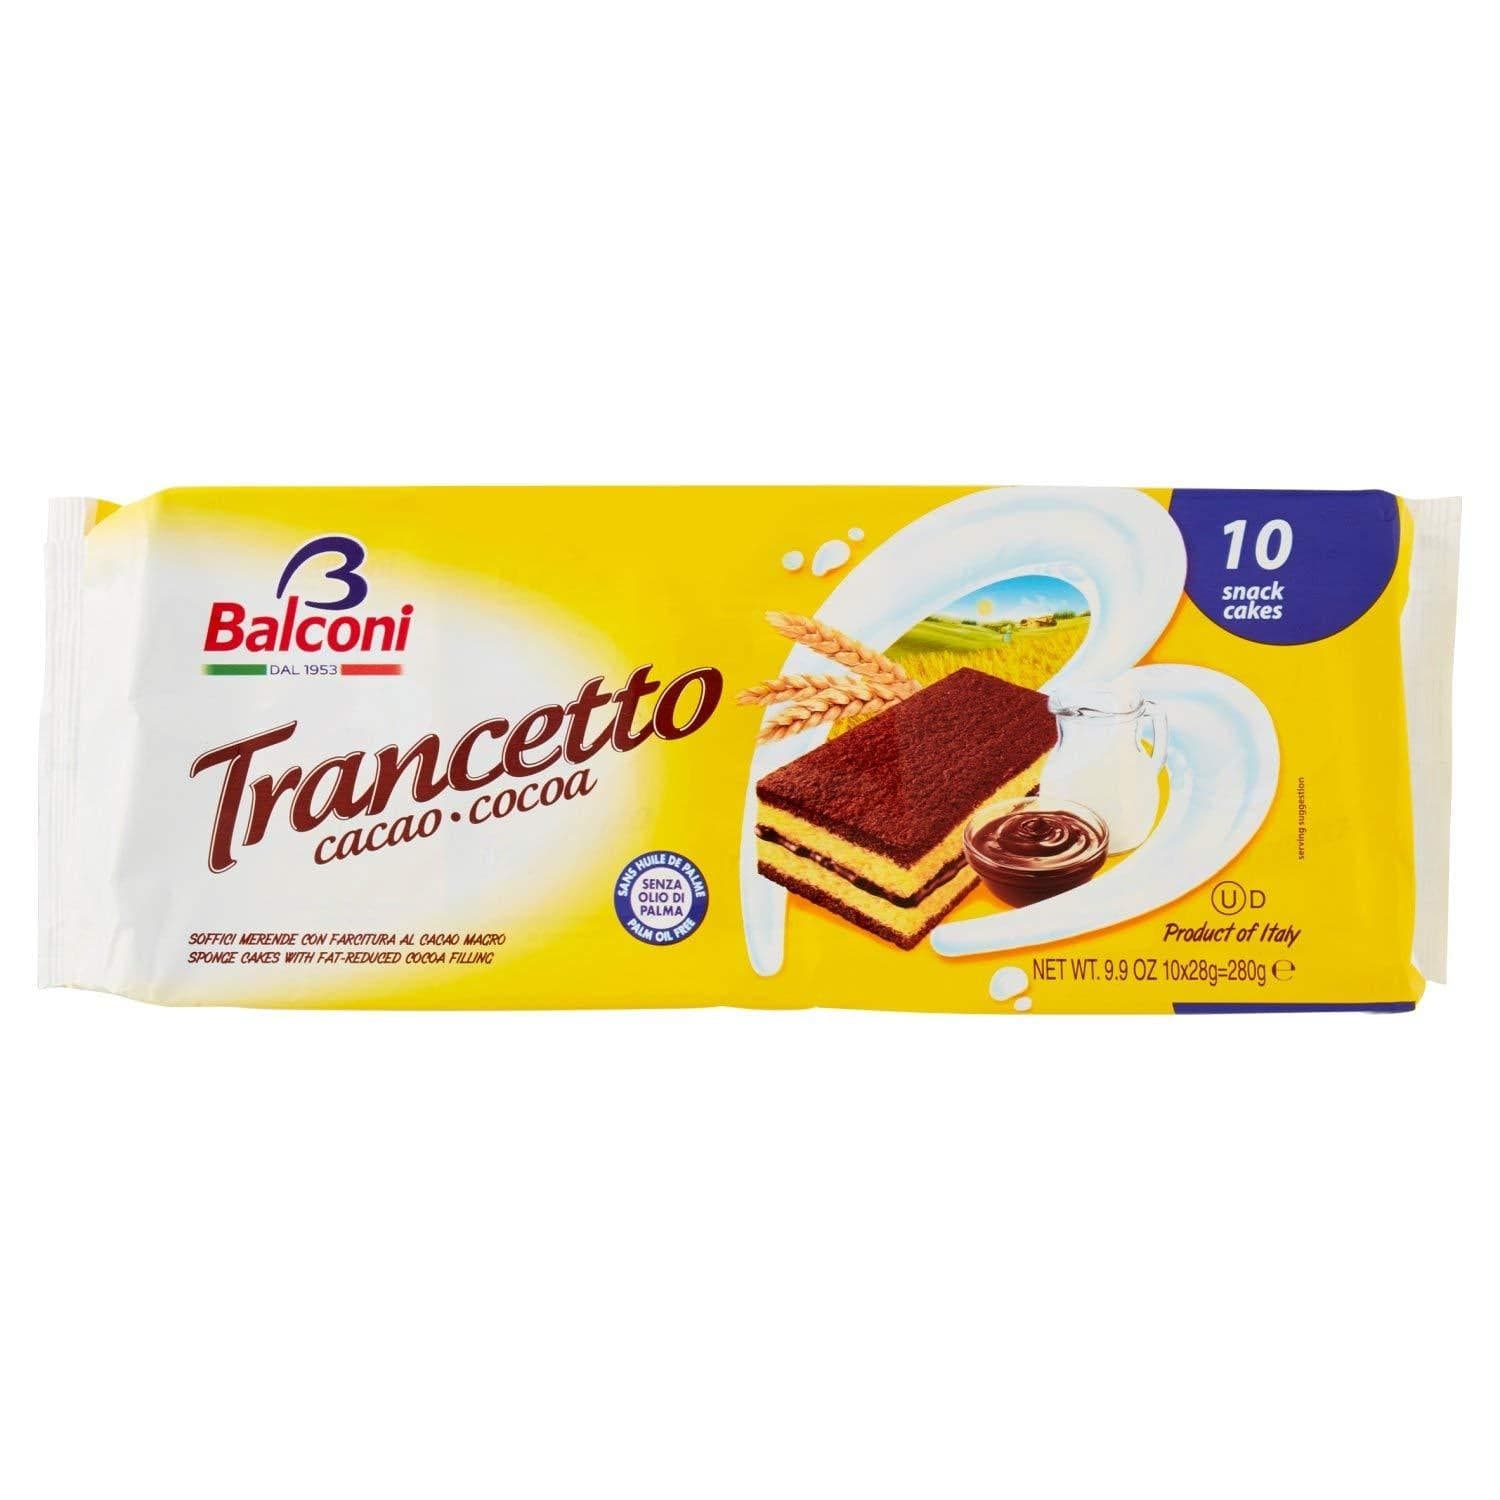 Balconi Trancetto Cocoa 10 Snack Cakes, 2 Packs UAE | Ubuy